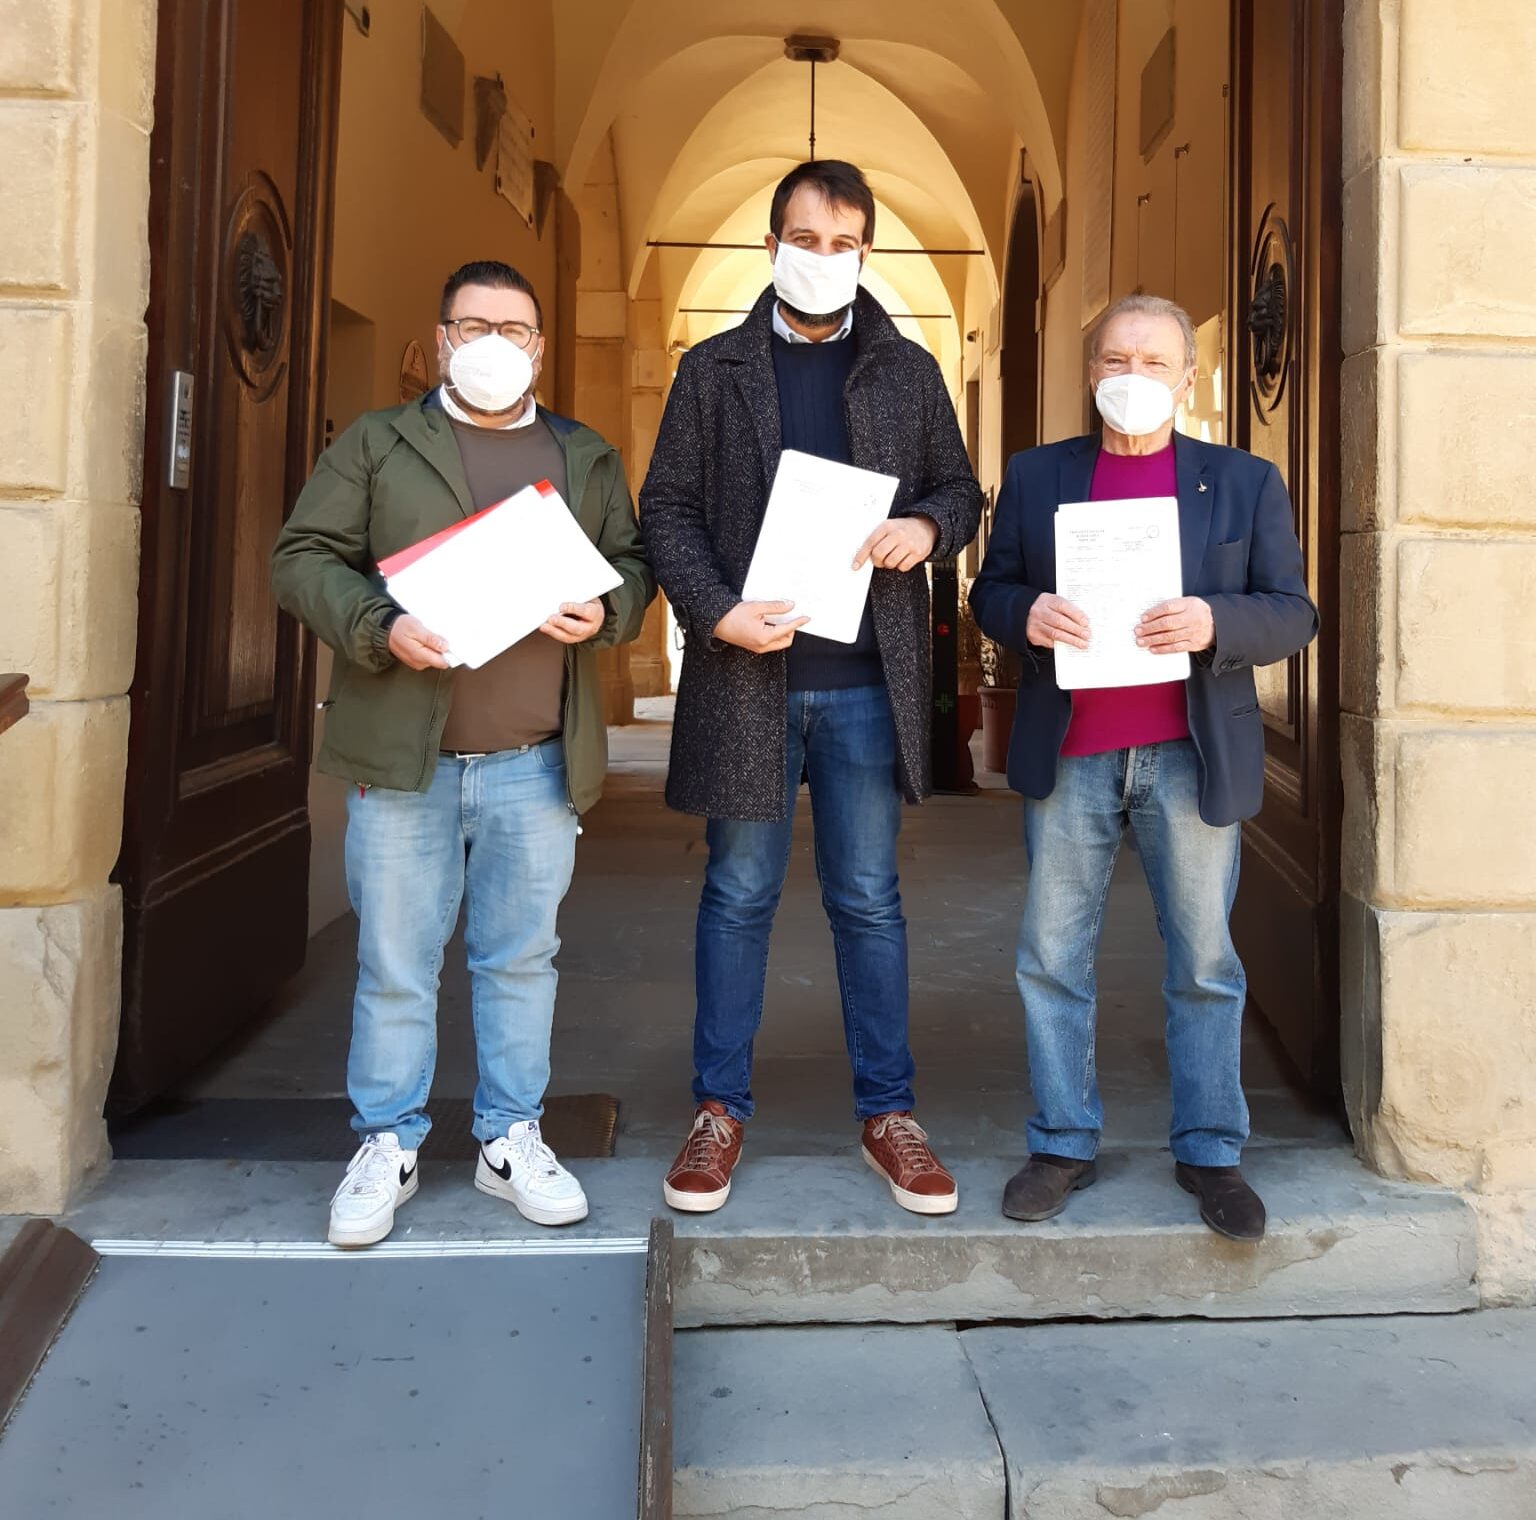 La legge di iniziativa popolare contro la propaganda fascista e nazista: ad Arezzo raccolte più di 1.350 firme